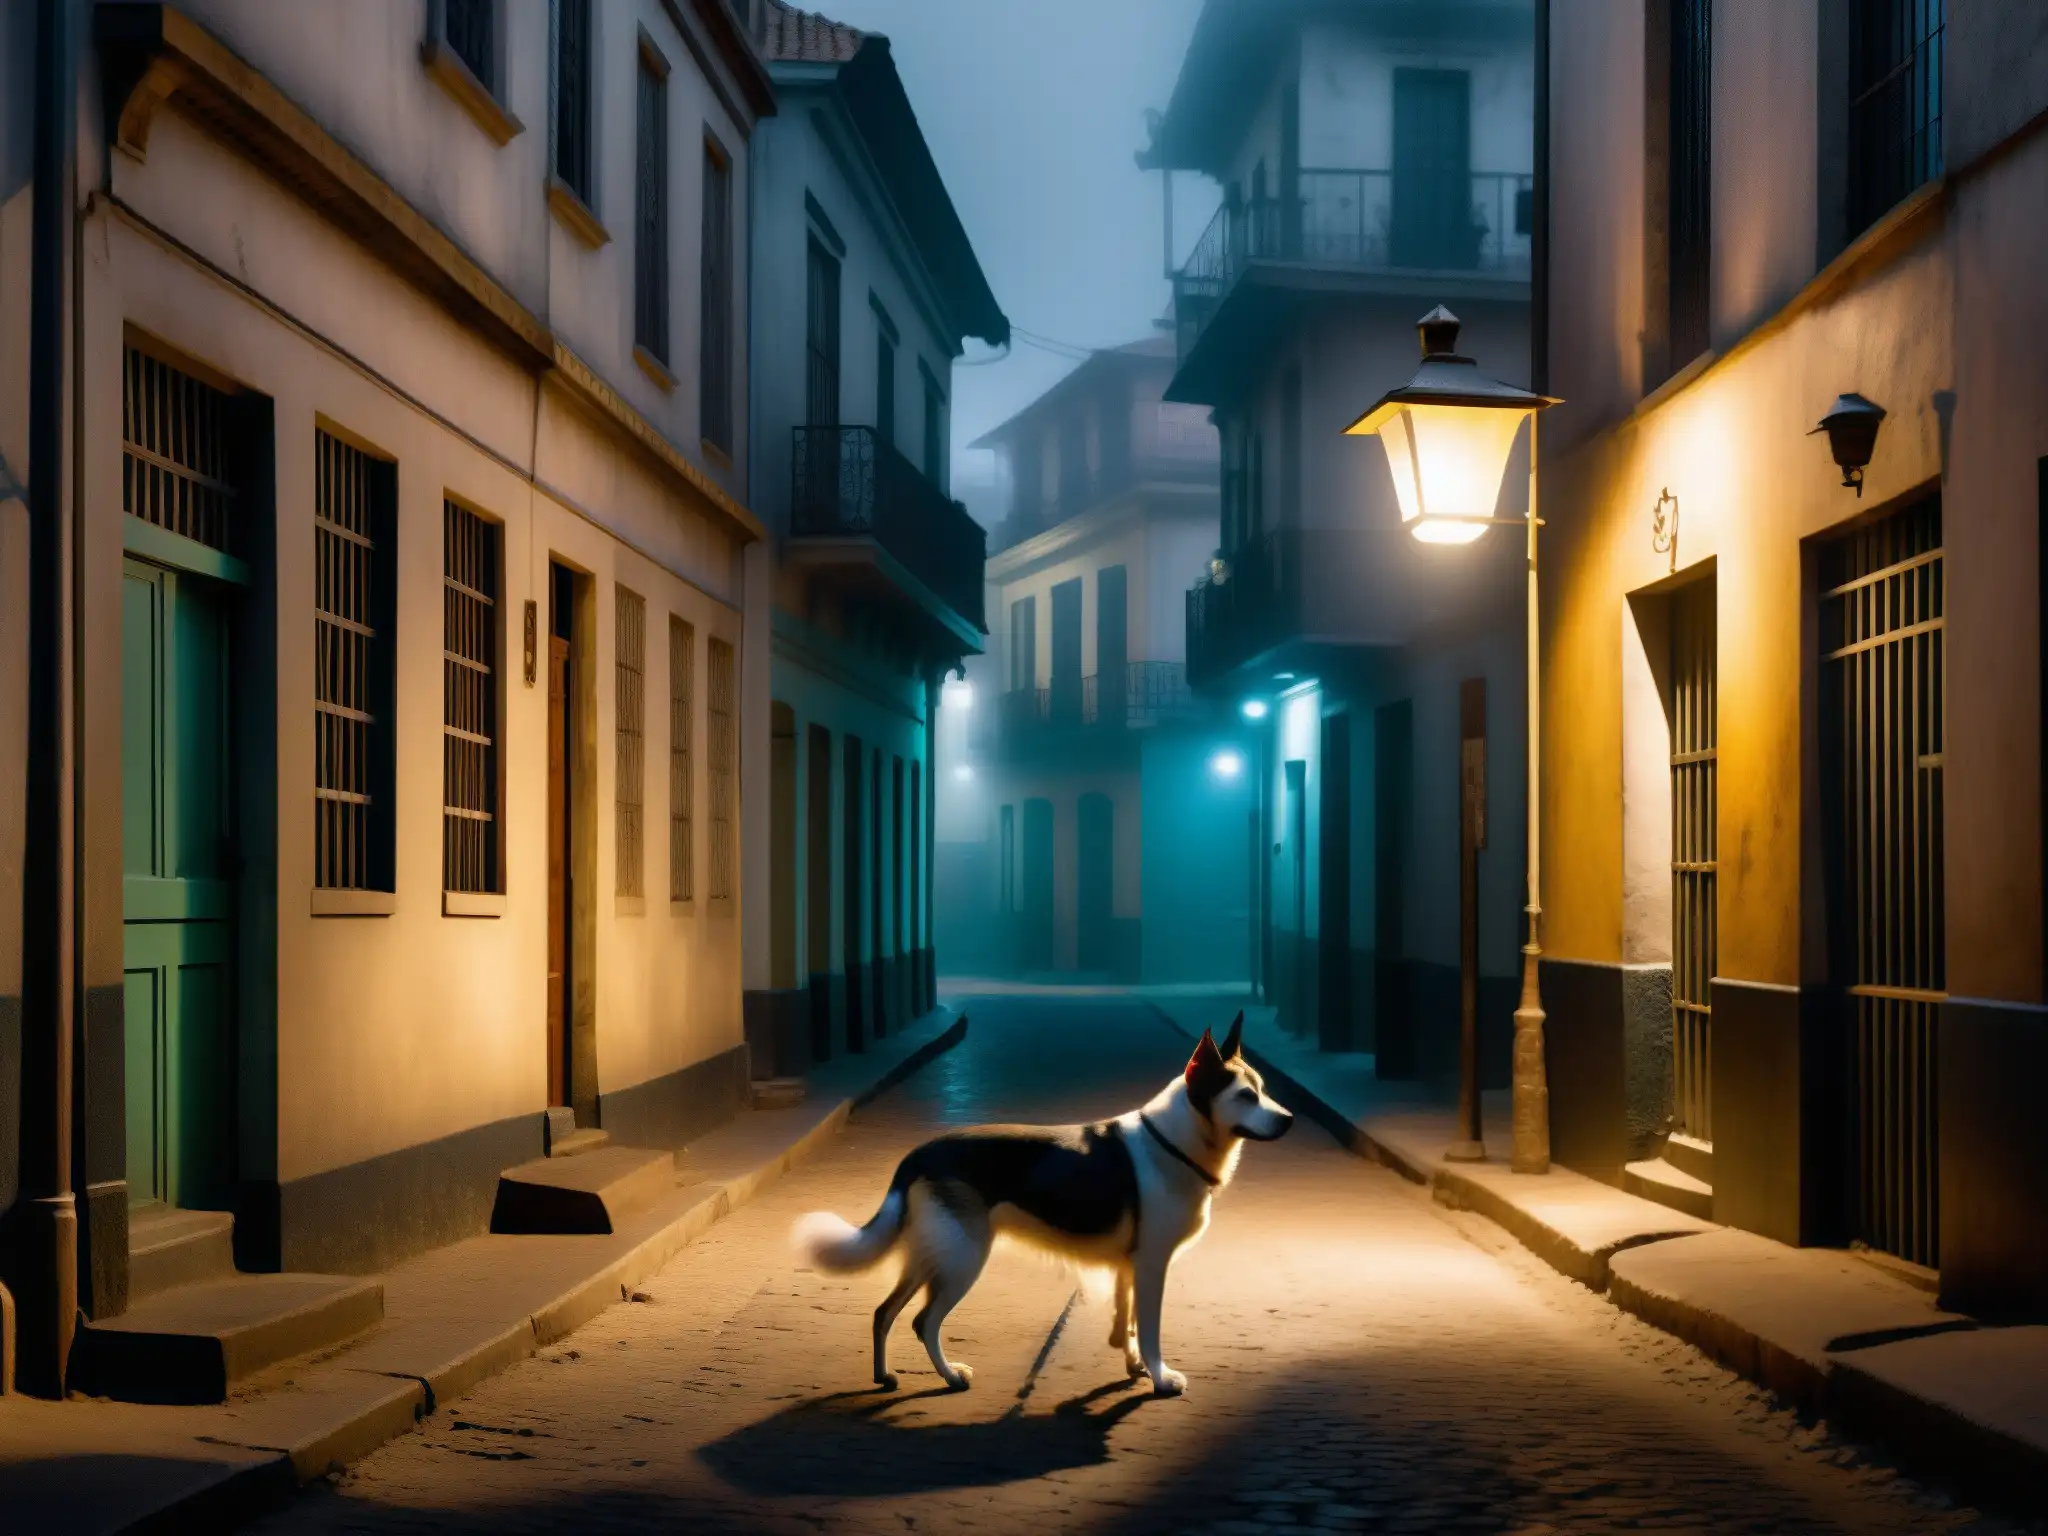 Un callejón sombrío en una ciudad sudamericana, envuelto en niebla con un perro callejero de ojos brillantes